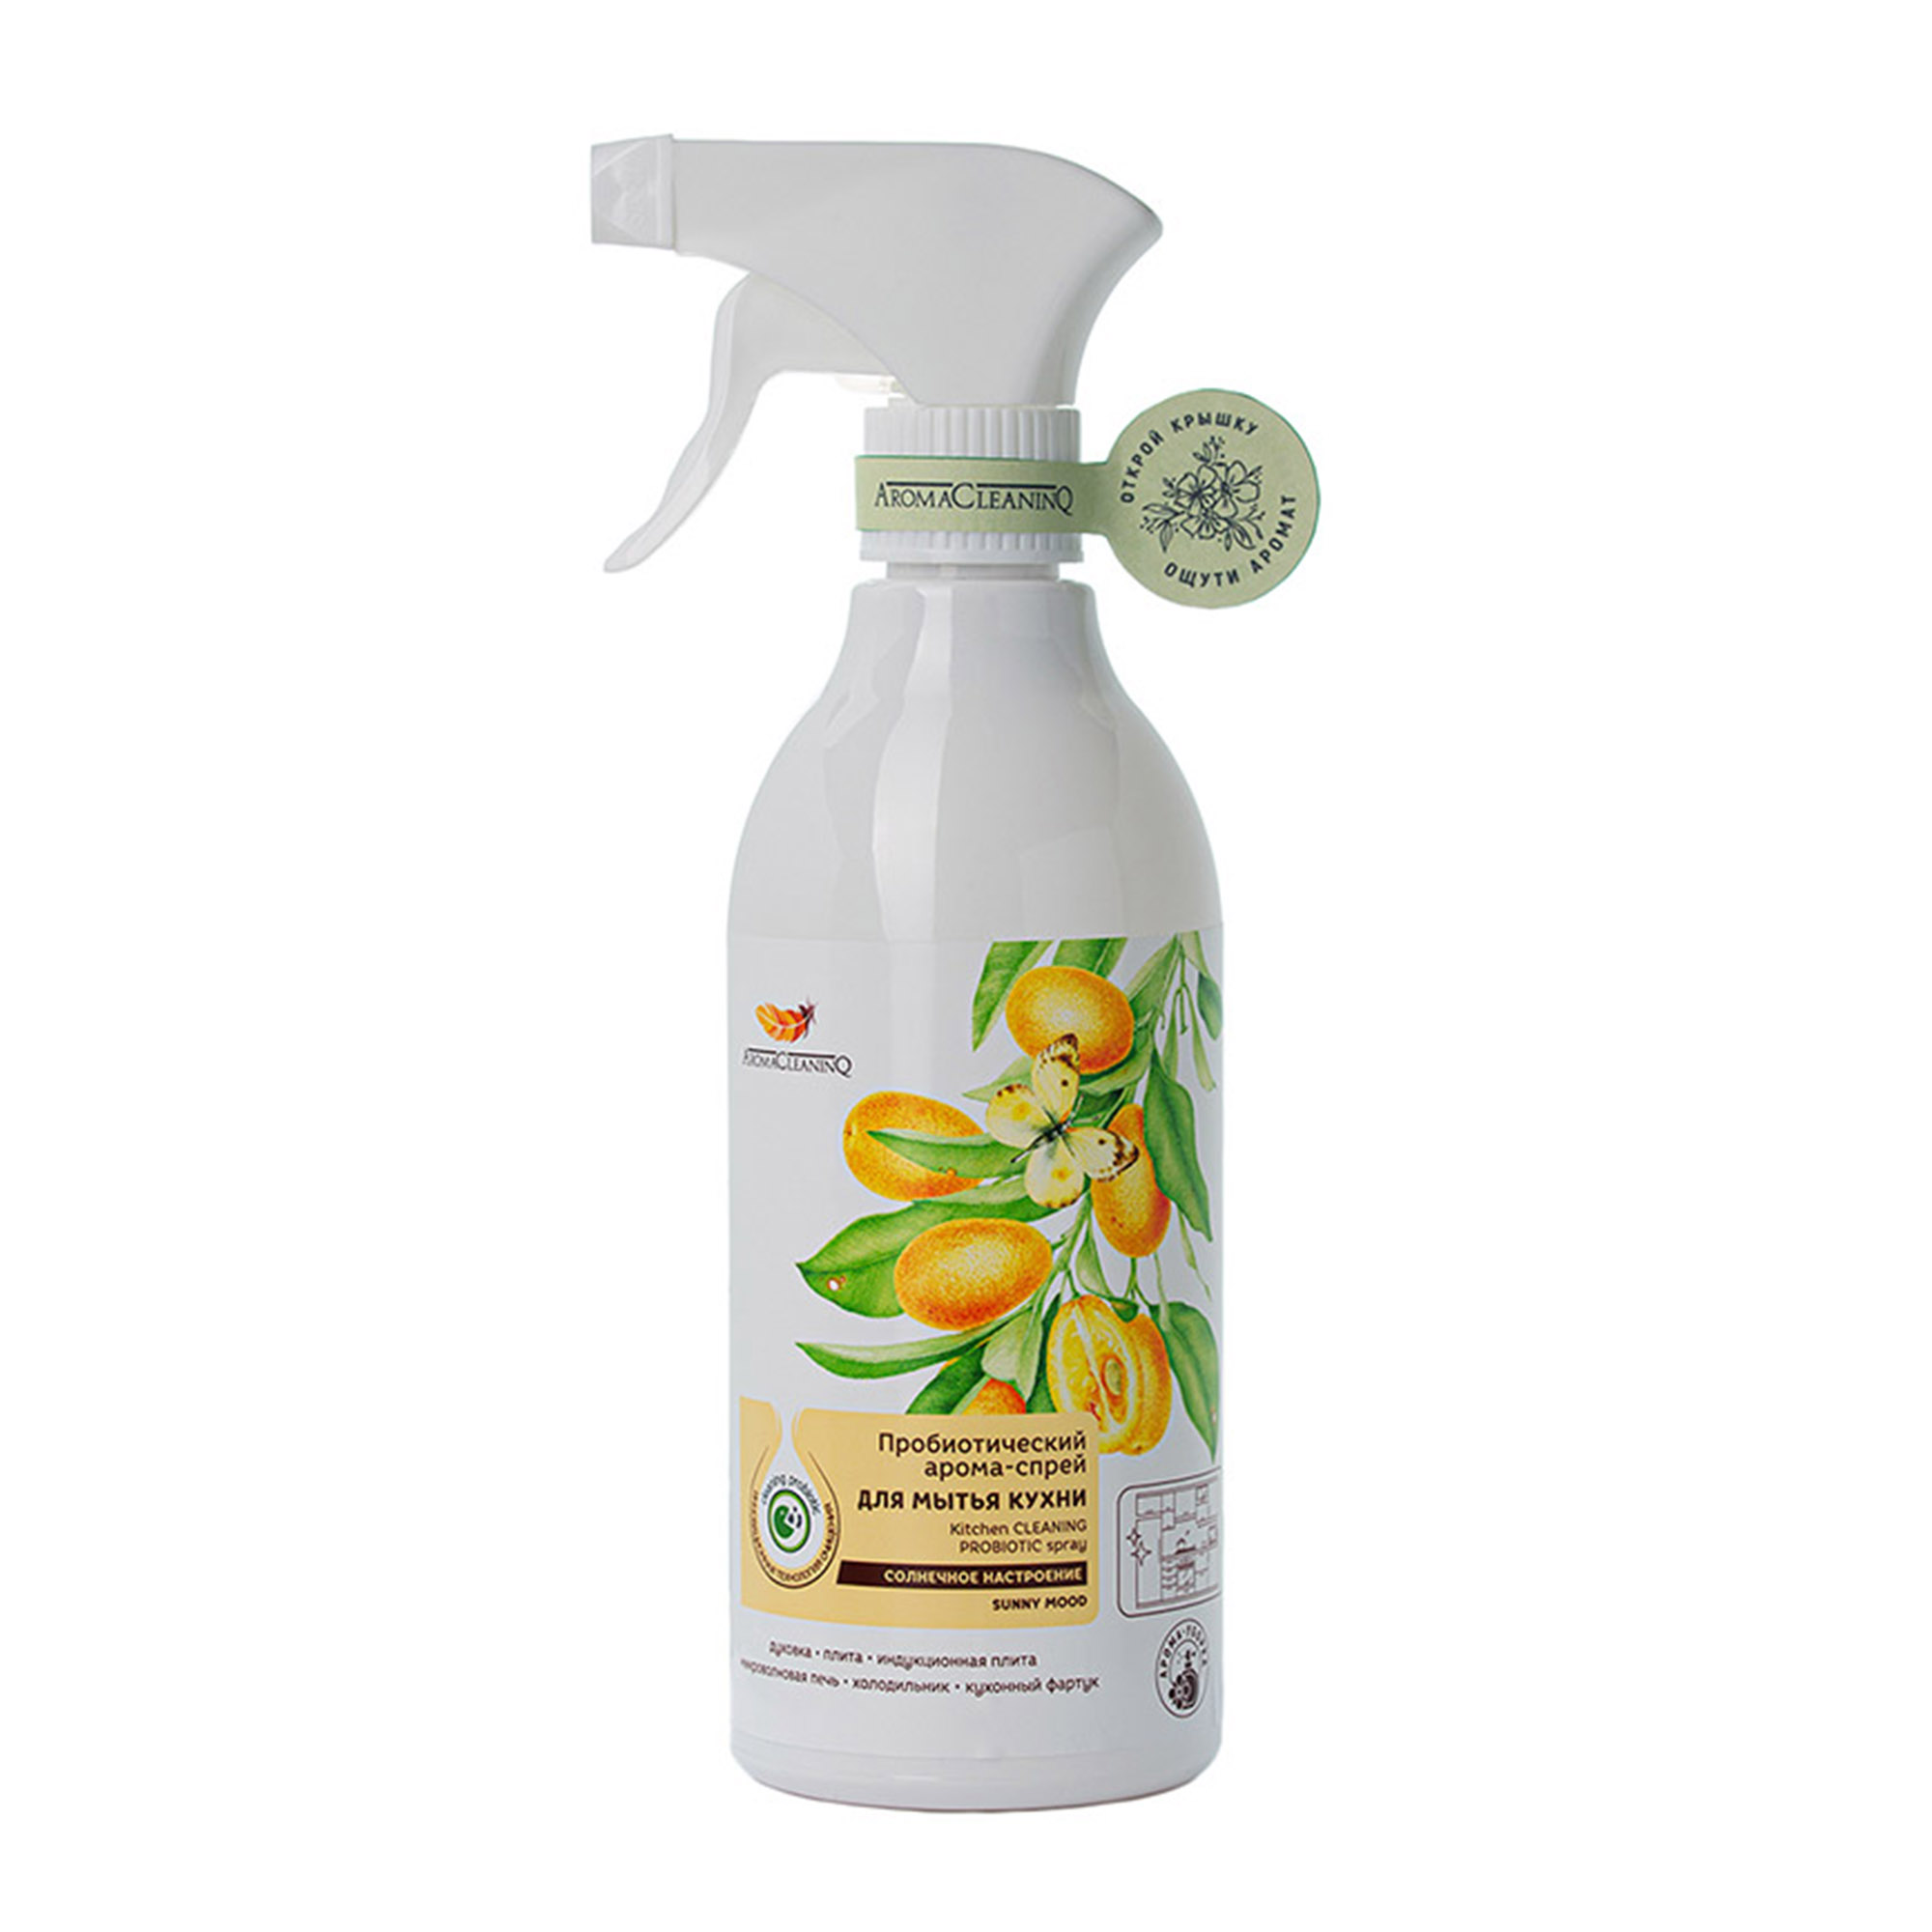 Спрей для мытья кухни  AromaCleaninQ Солнечное Настроение с пробиотиками 500 мл